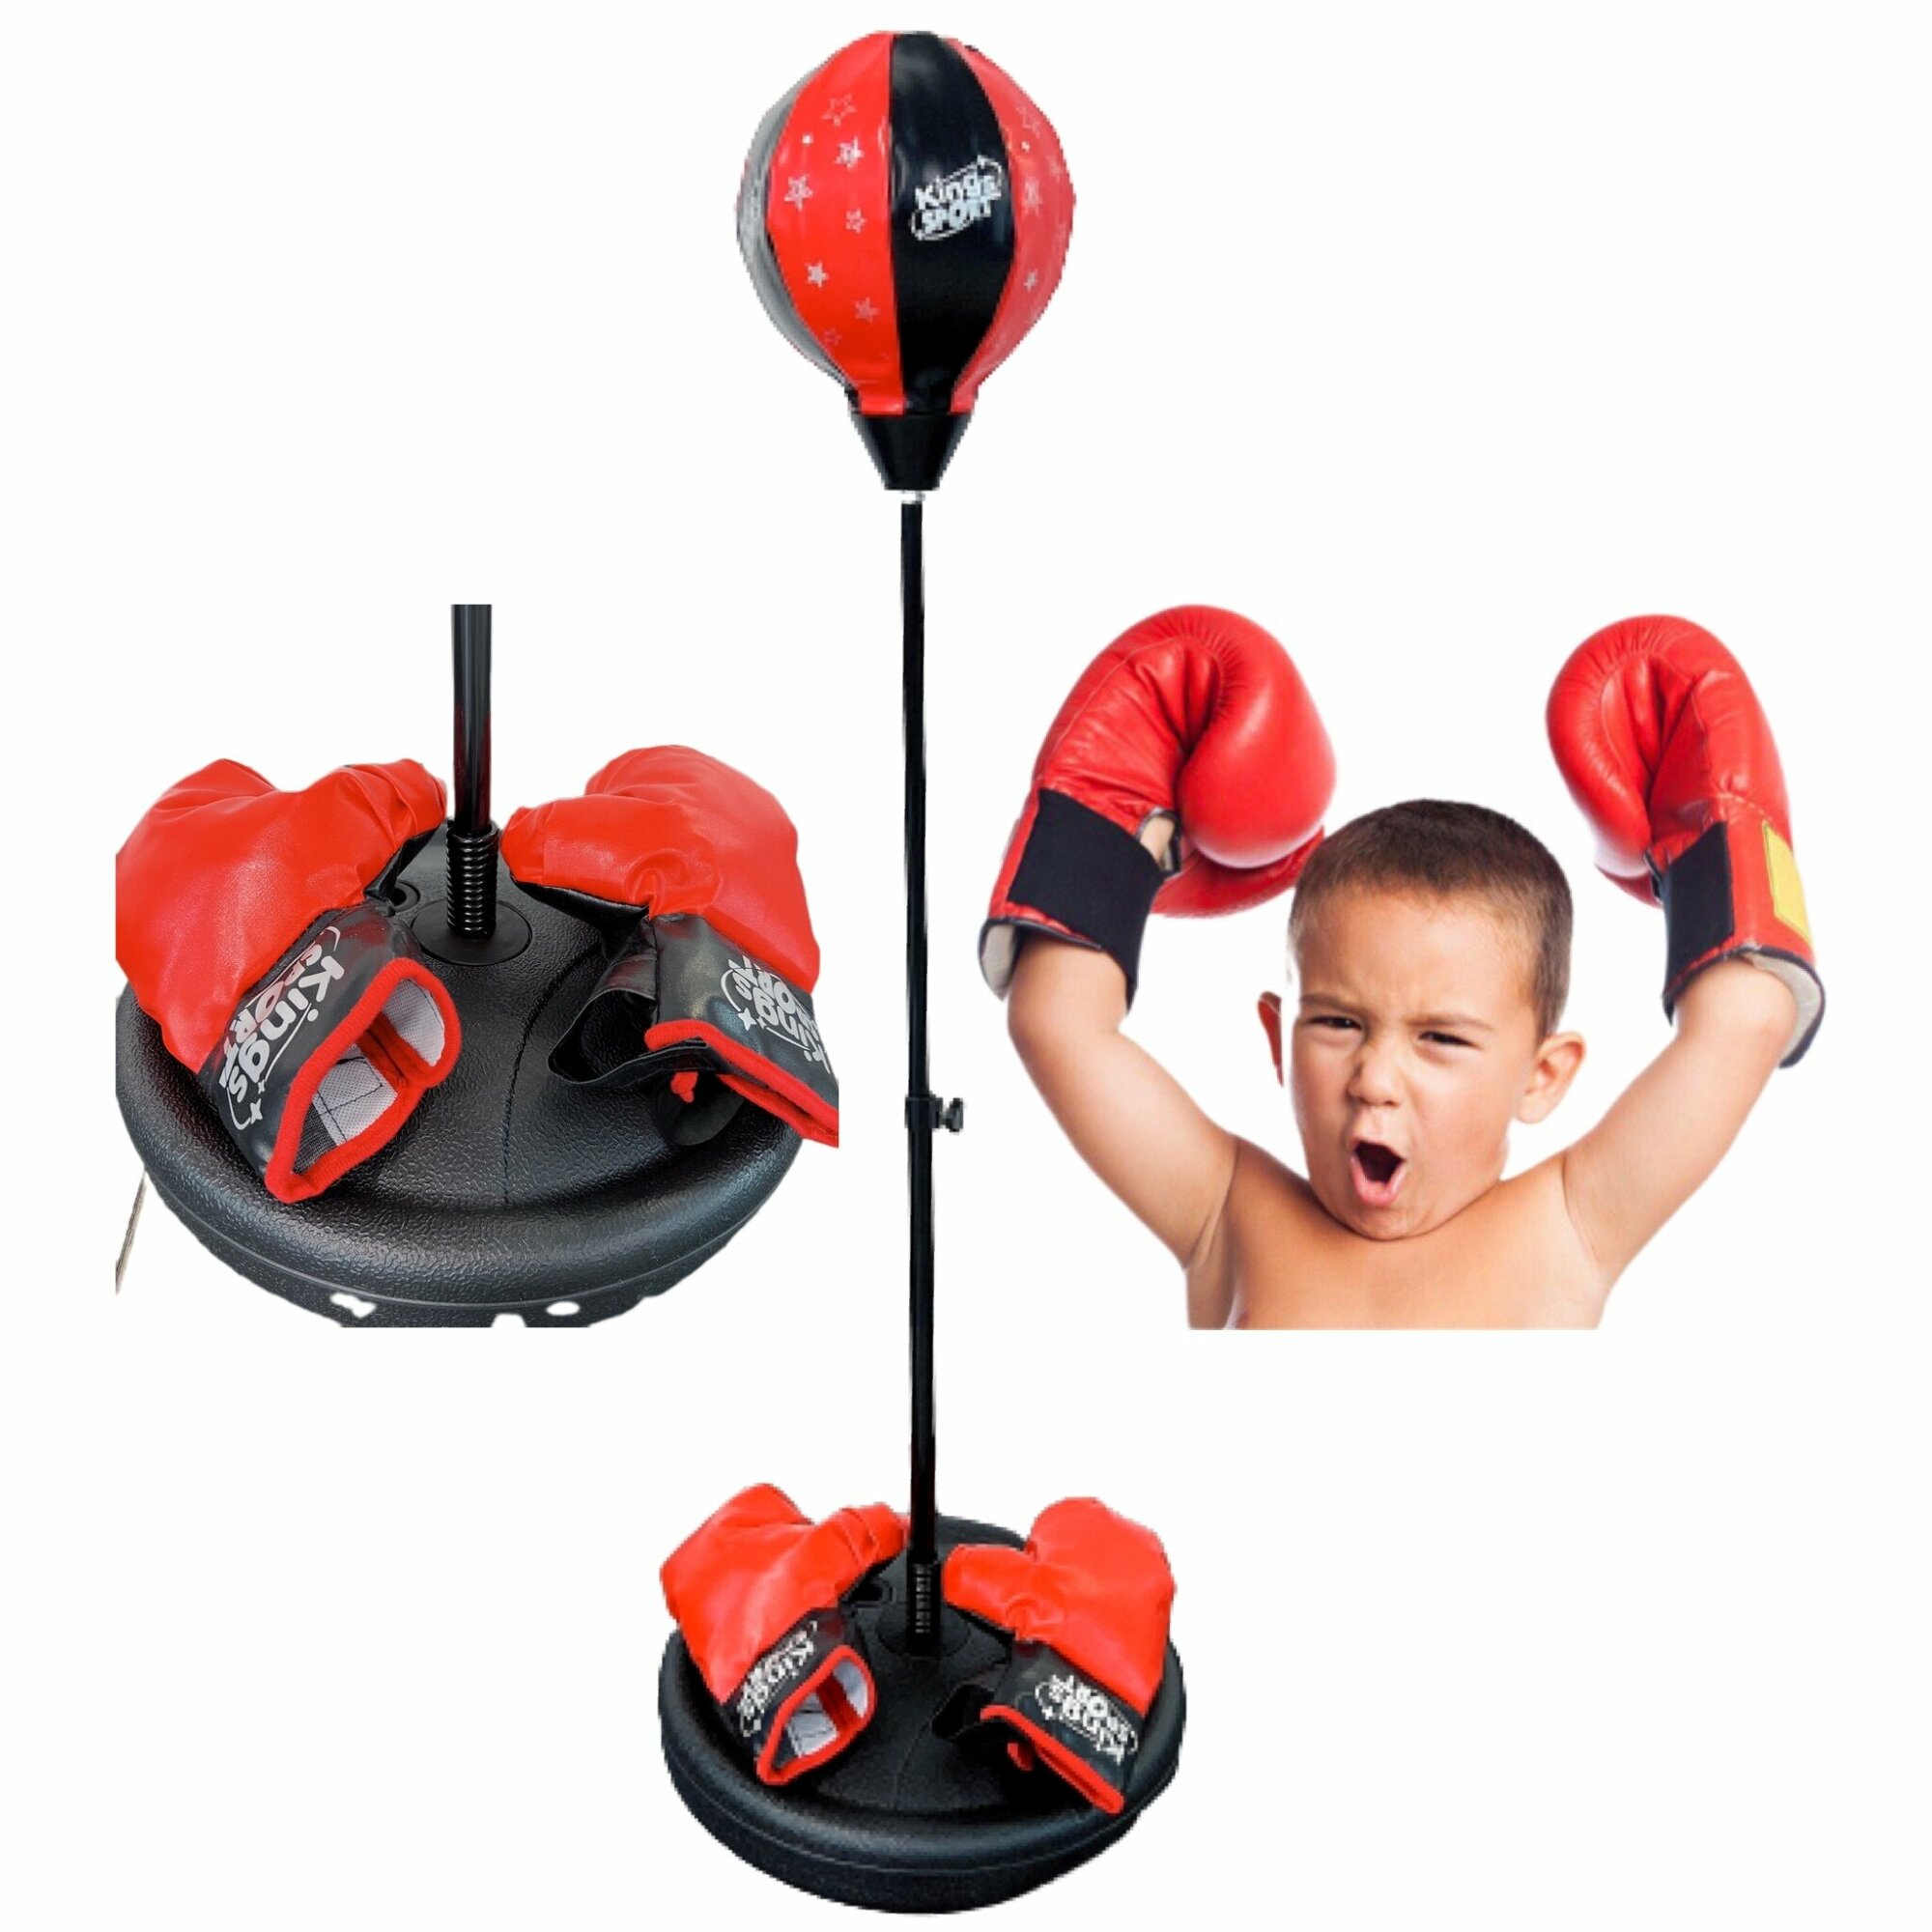 Боксерская груша детская 90-125см напольная груша, груша для бокса напольная с перчатками и регулировкой высоты